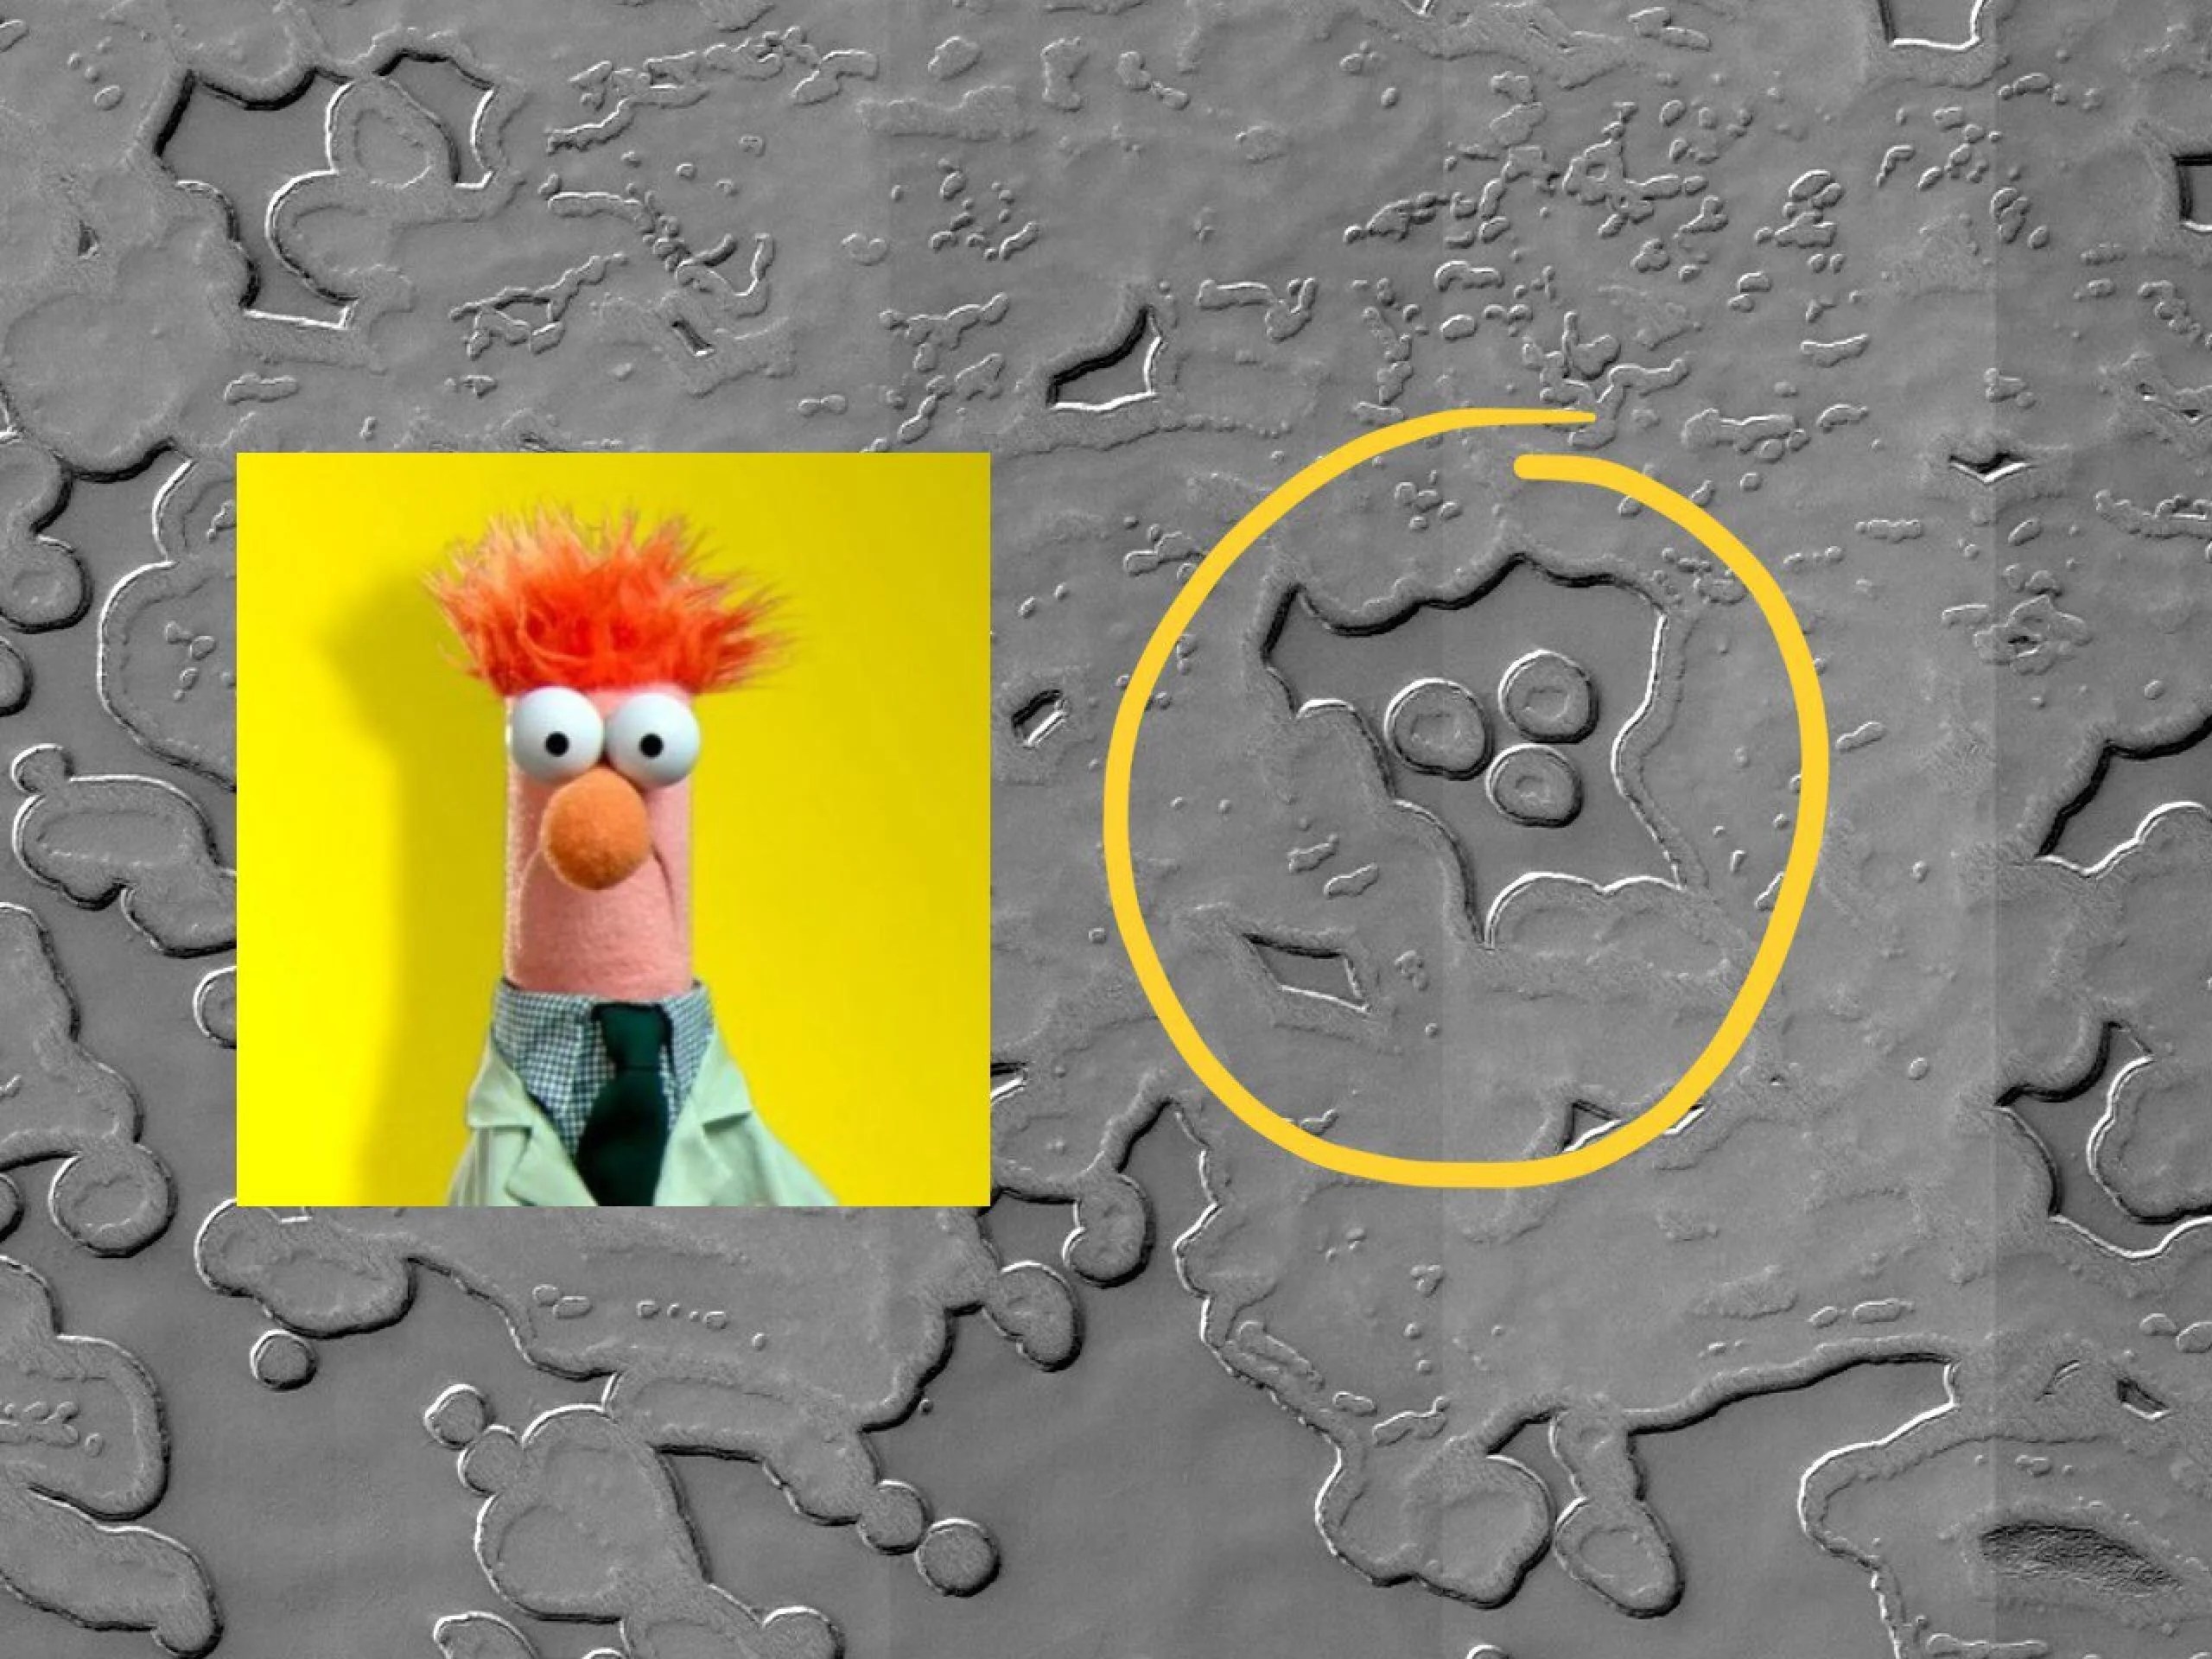 Un tuit del equipo de la cámara HiRISE a bordo del Orbitador de Reconocimiento de Marte de la NASA, la nave espacial que tomó la imagen que fue la fuente del “avistamiento” del Muppet. Créditos: NASA/JPL-Caltech/Universidad de Arizona